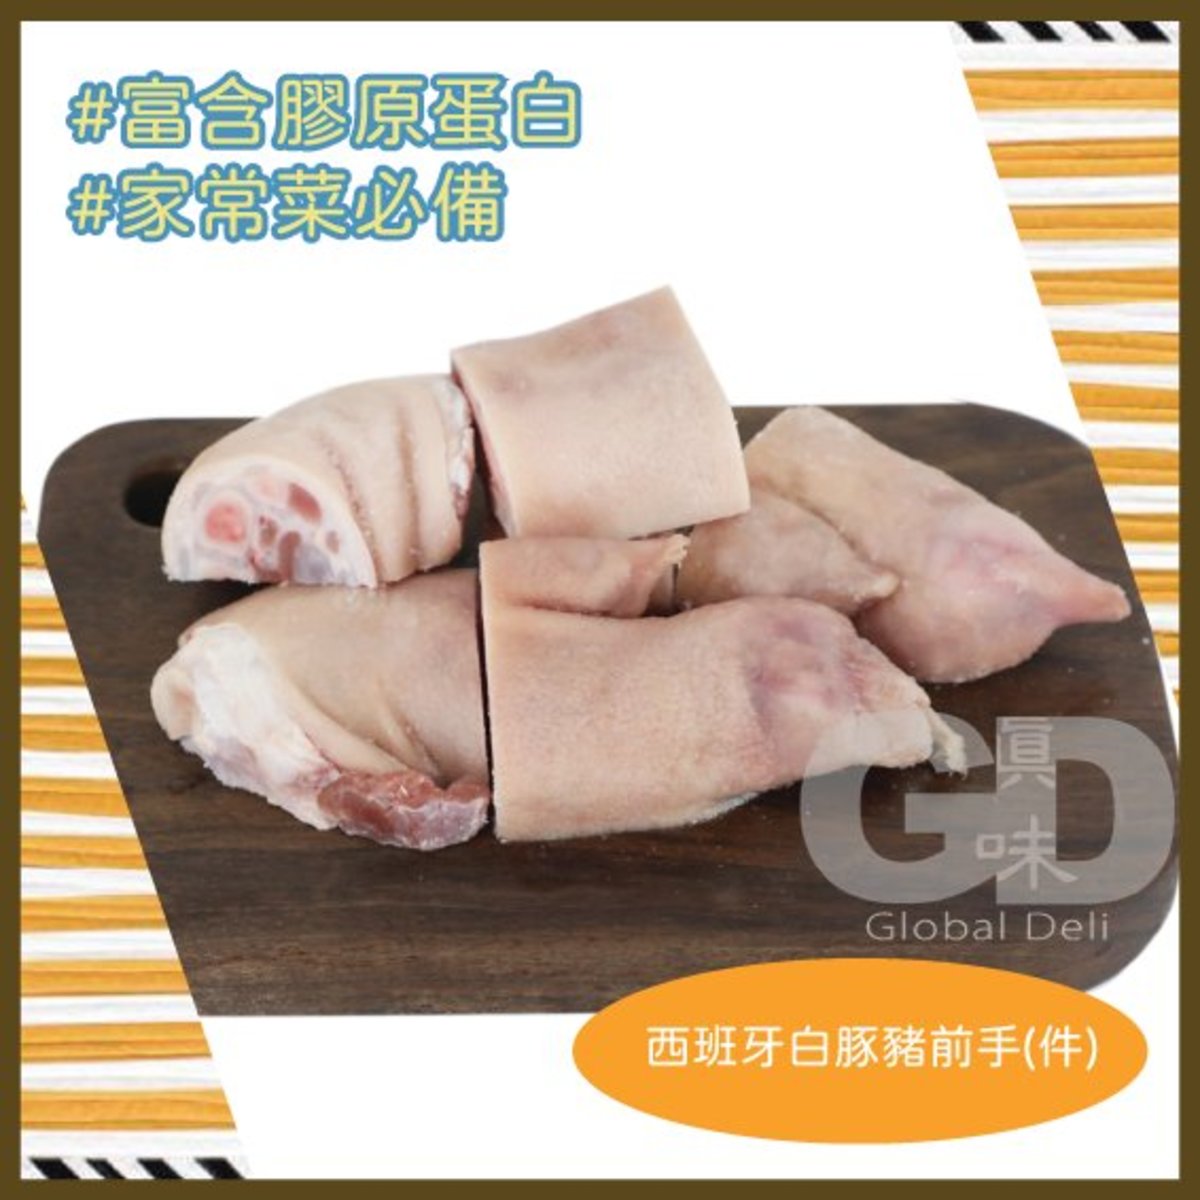 西班牙白豚豬前手(件)  (急凍 - 零下18度)